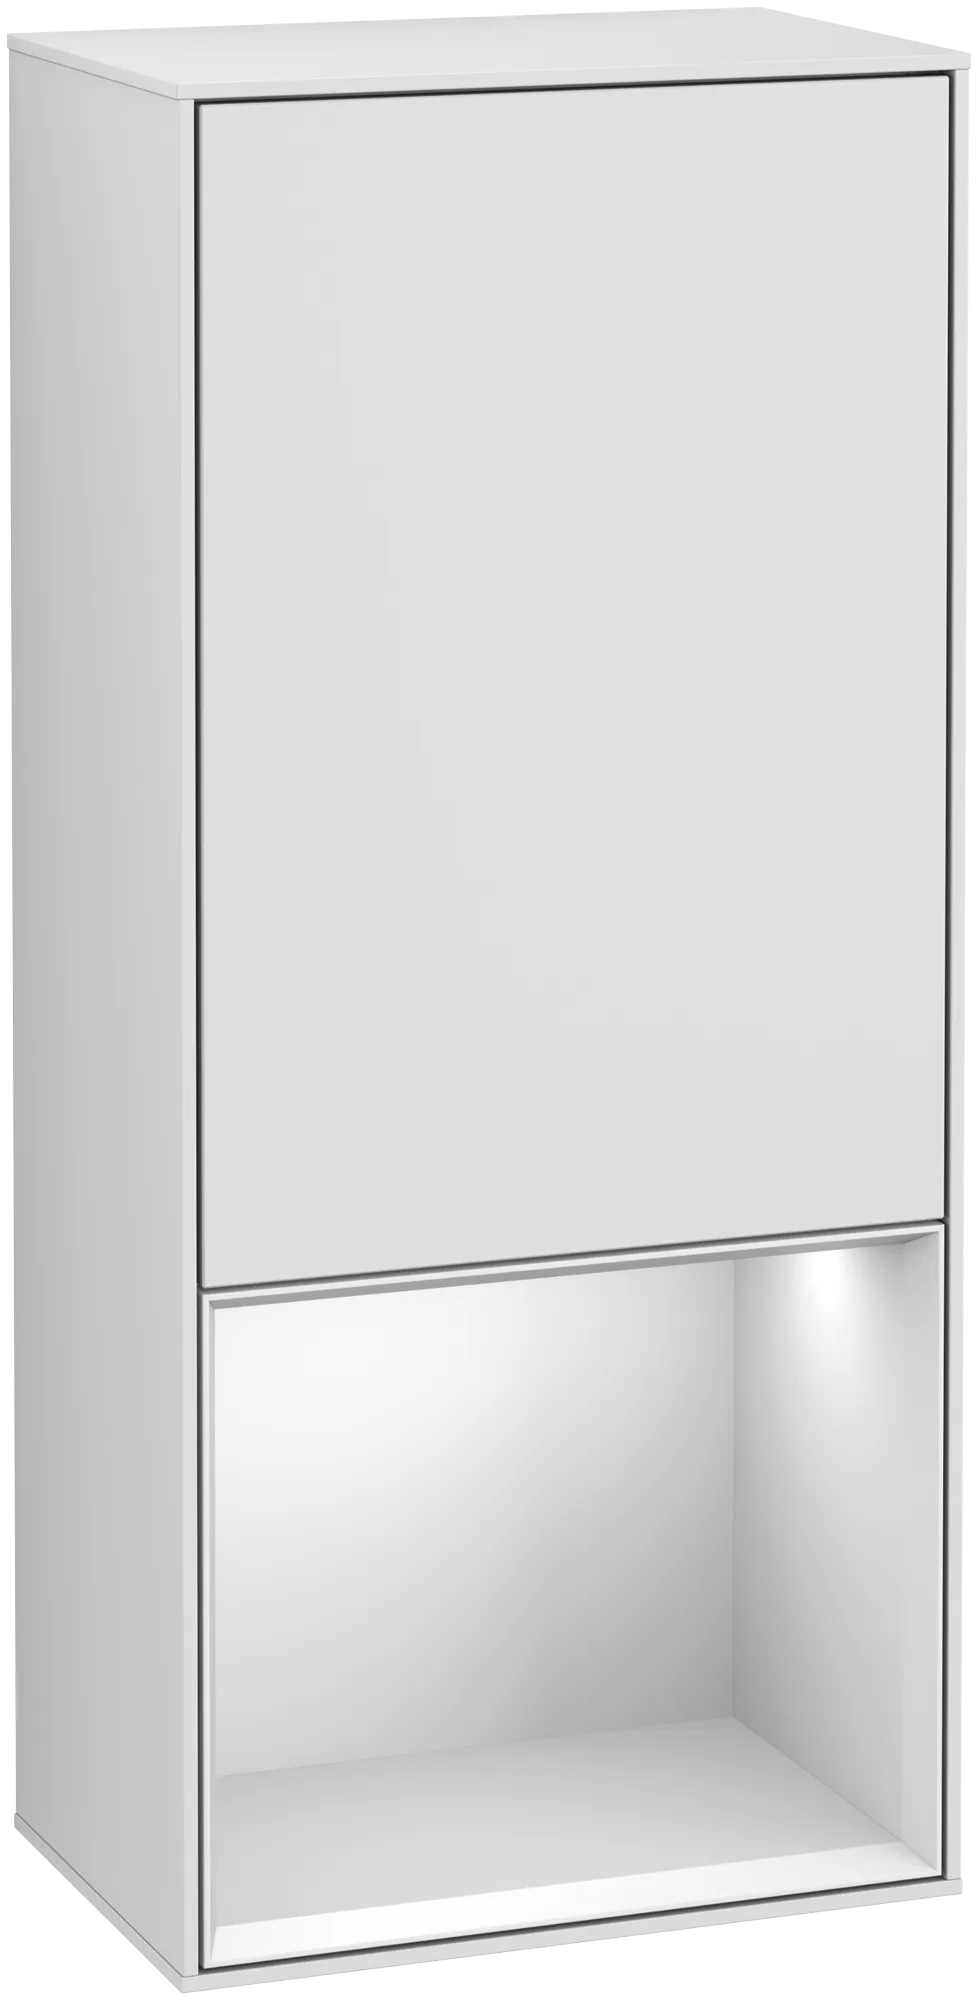 Bild von VILLEROY BOCH Finion Seitenschrank, mit Beleuchtung, 1 Tür, 418 x 936 x 270 mm, White Matt Lacquer / White Matt Lacquer #G540MTMT